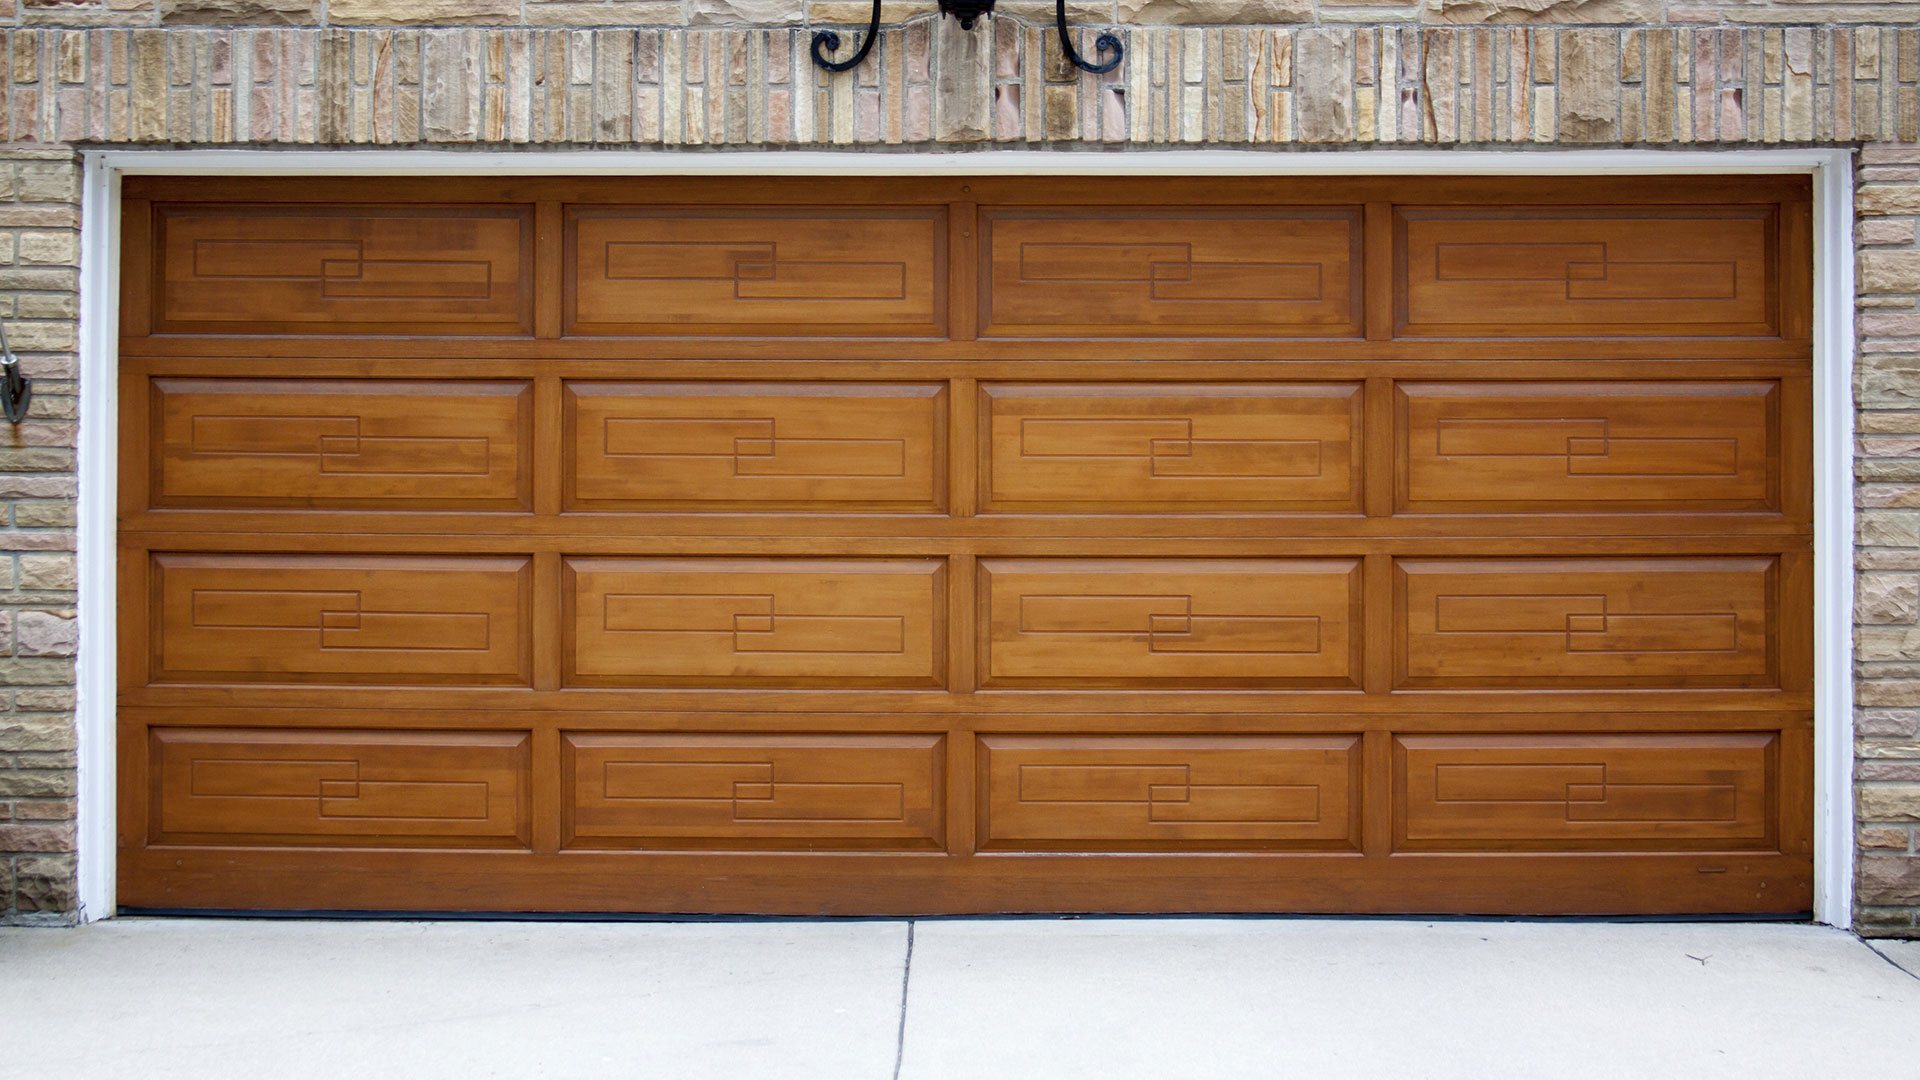 The 7 Benefits of Installing a Smart Garage Door Opener with J&J Garage ...